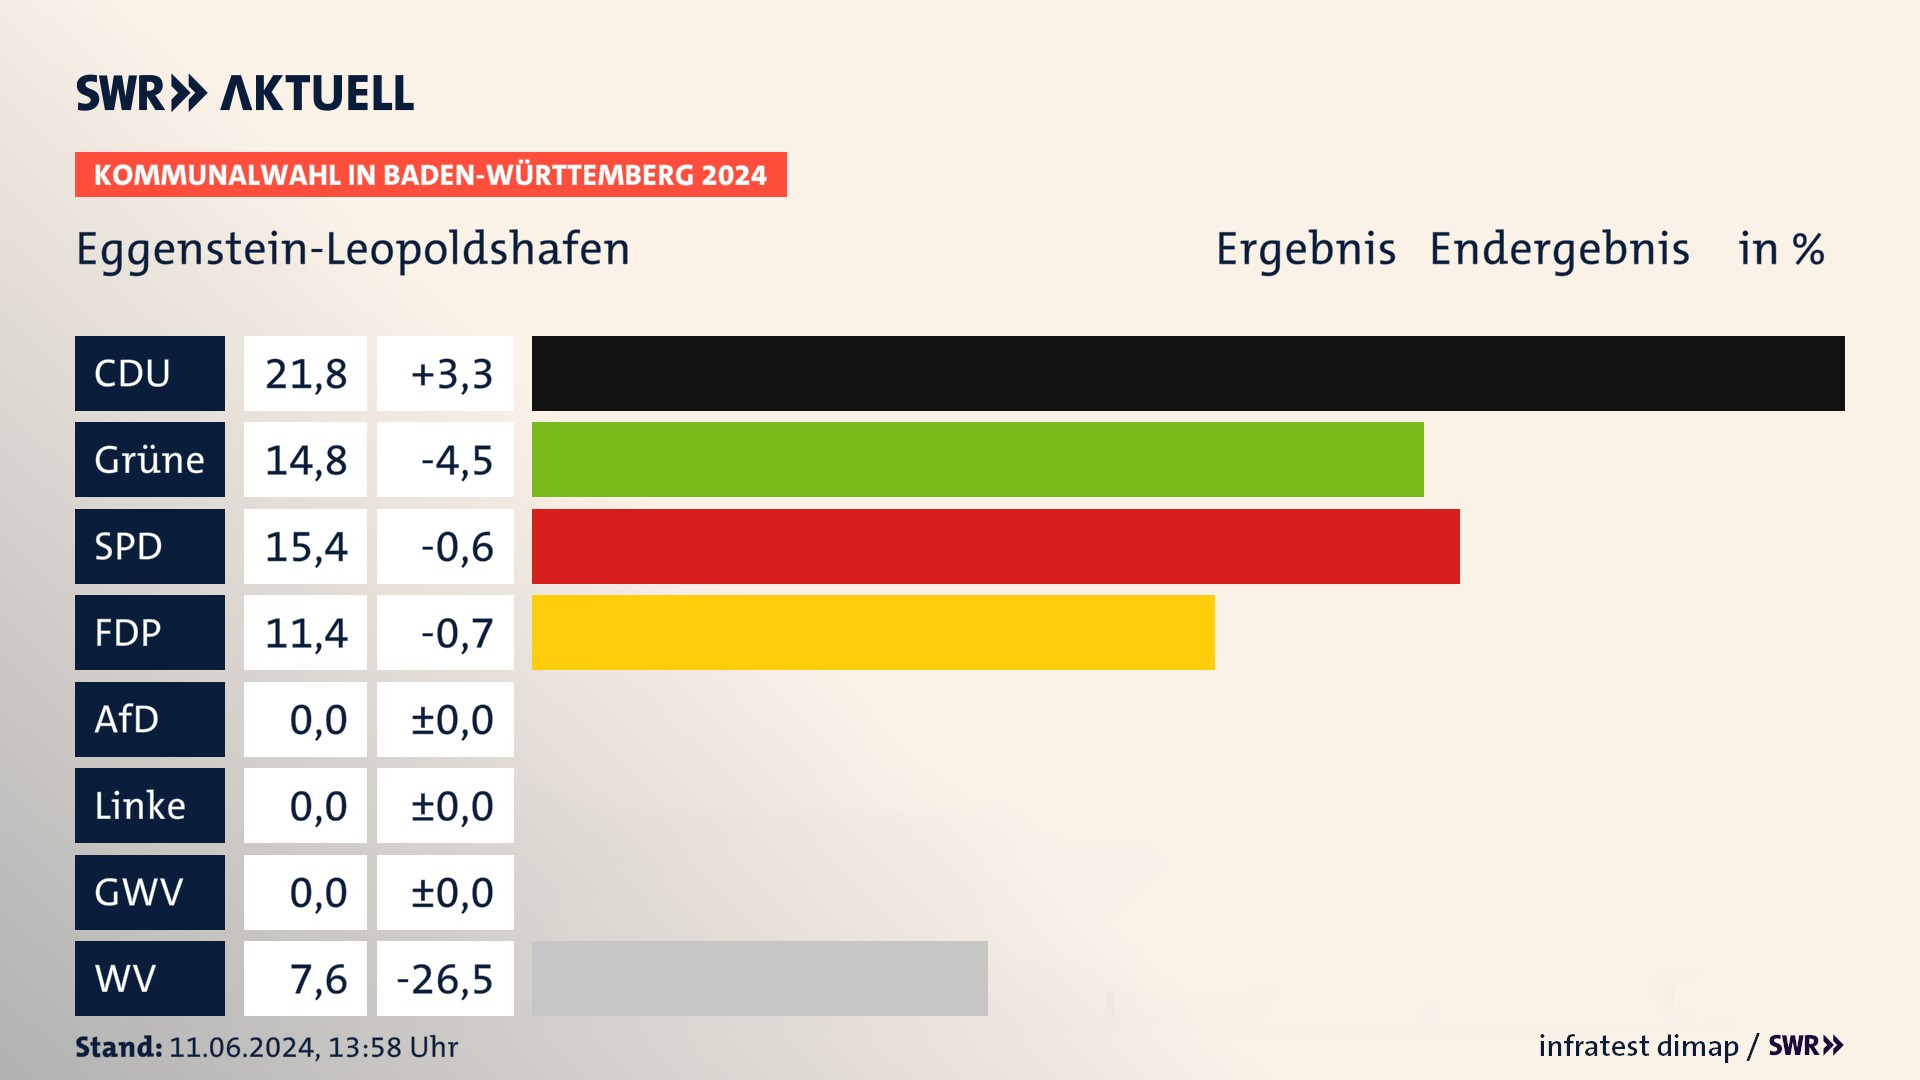 Kommunalwahl 2024 Endergebnis Zweitstimme für Eggenstein-Leopoldshafen. In Eggenstein-Leopoldshafen erzielt die CDU 21,8 Prozent der gültigen  Stimmen. Die Grünen landen bei 14,8 Prozent. Die SPD erreicht 15,4 Prozent. Die FDP kommt auf 11,4 Prozent. Die Wählervereinigungen landen bei 7,6 Prozent.